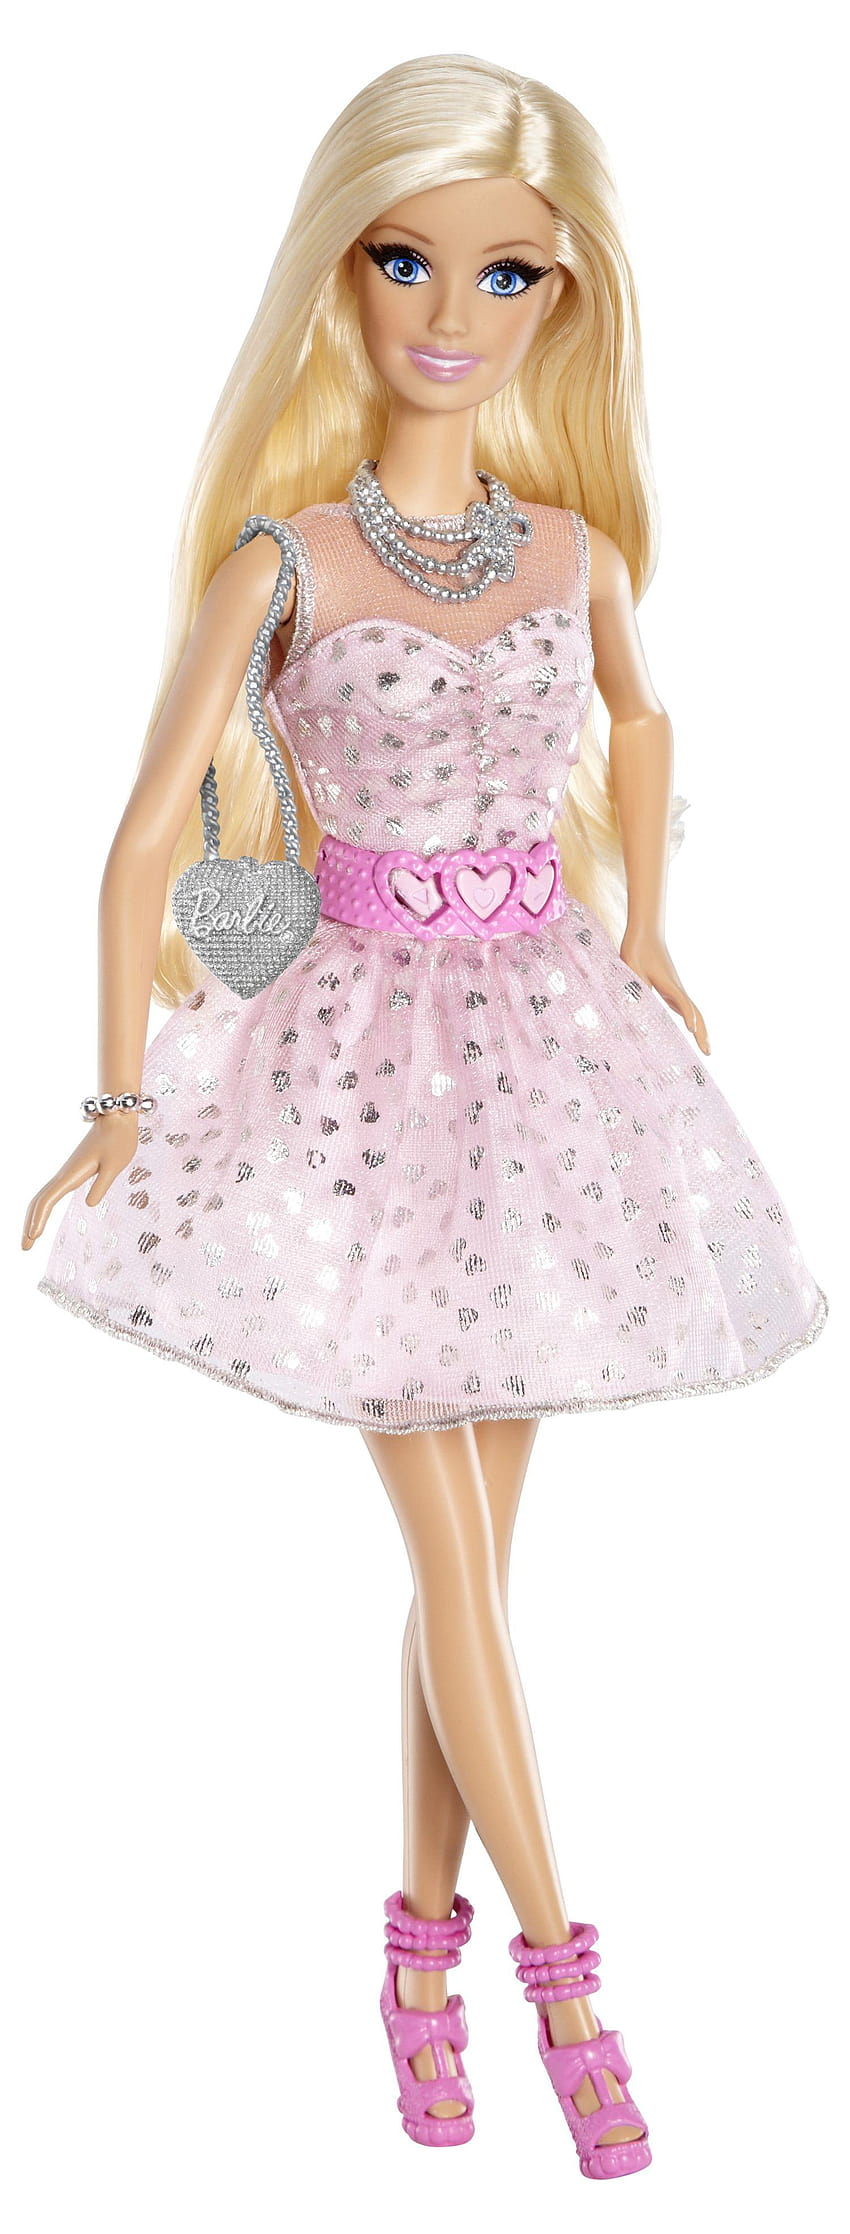 バービー ドール フェイス ケーキ プリンセス ハウス ボディ 女の子 、新しいバービー人形 HD電話の壁紙